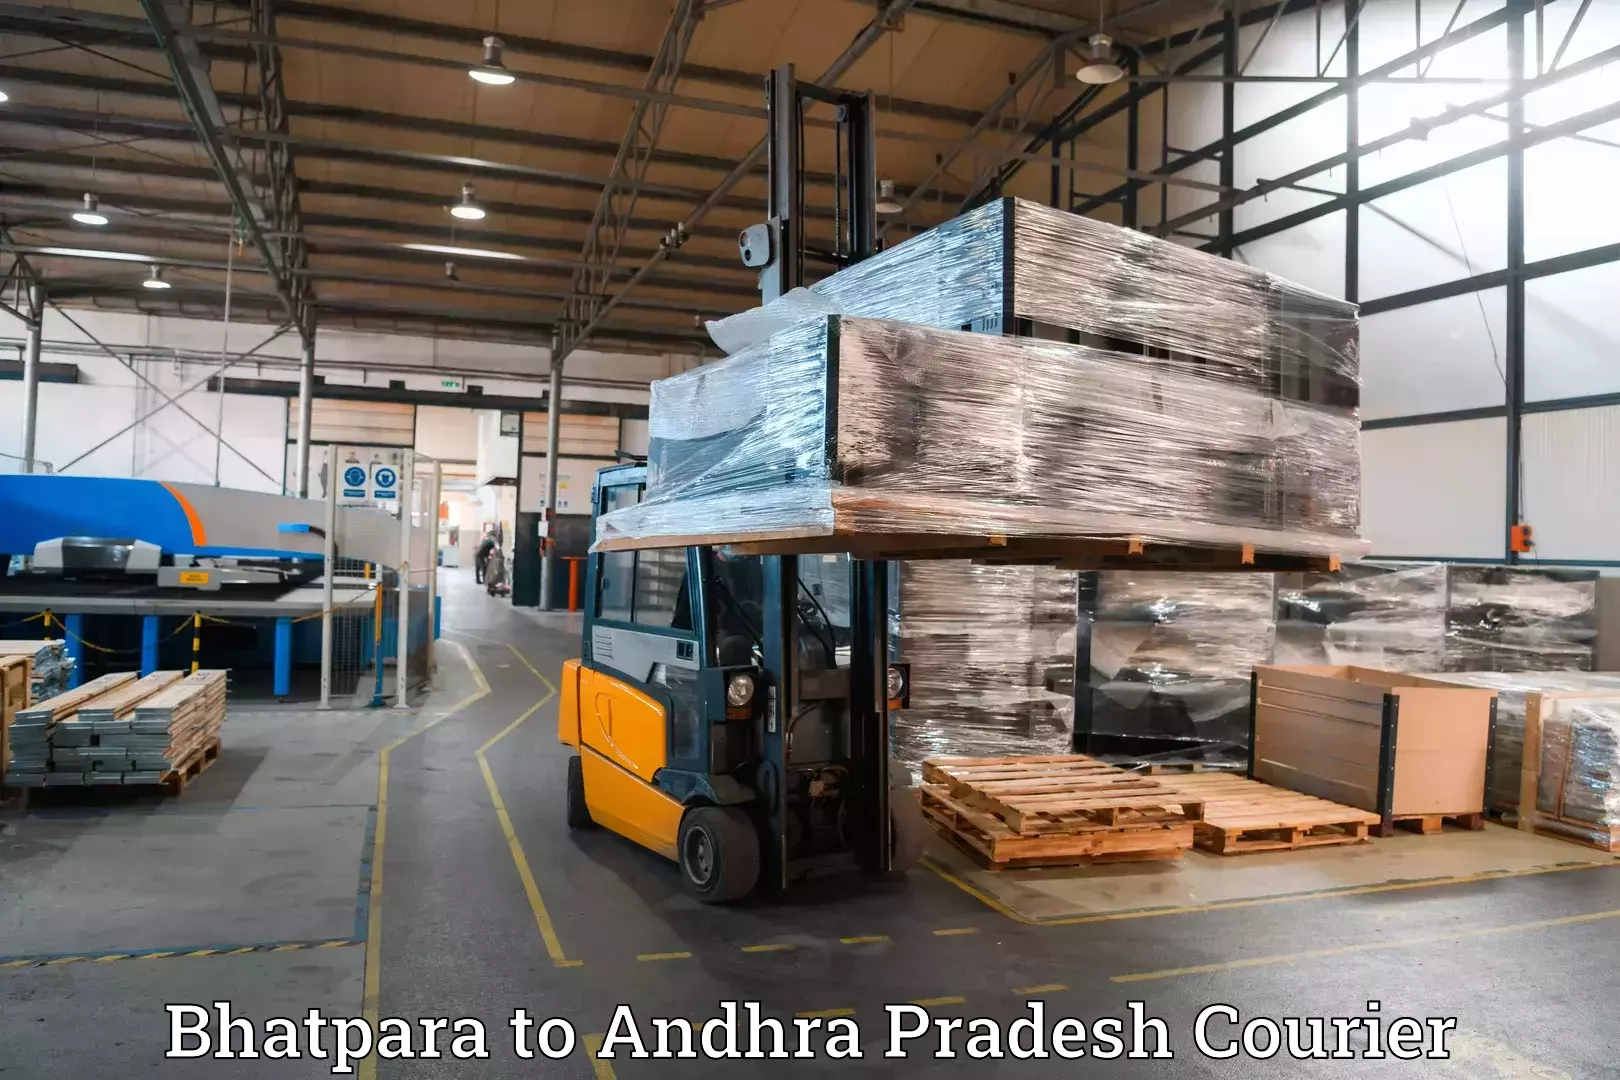 Door-to-door baggage service Bhatpara to IIT Tirupati